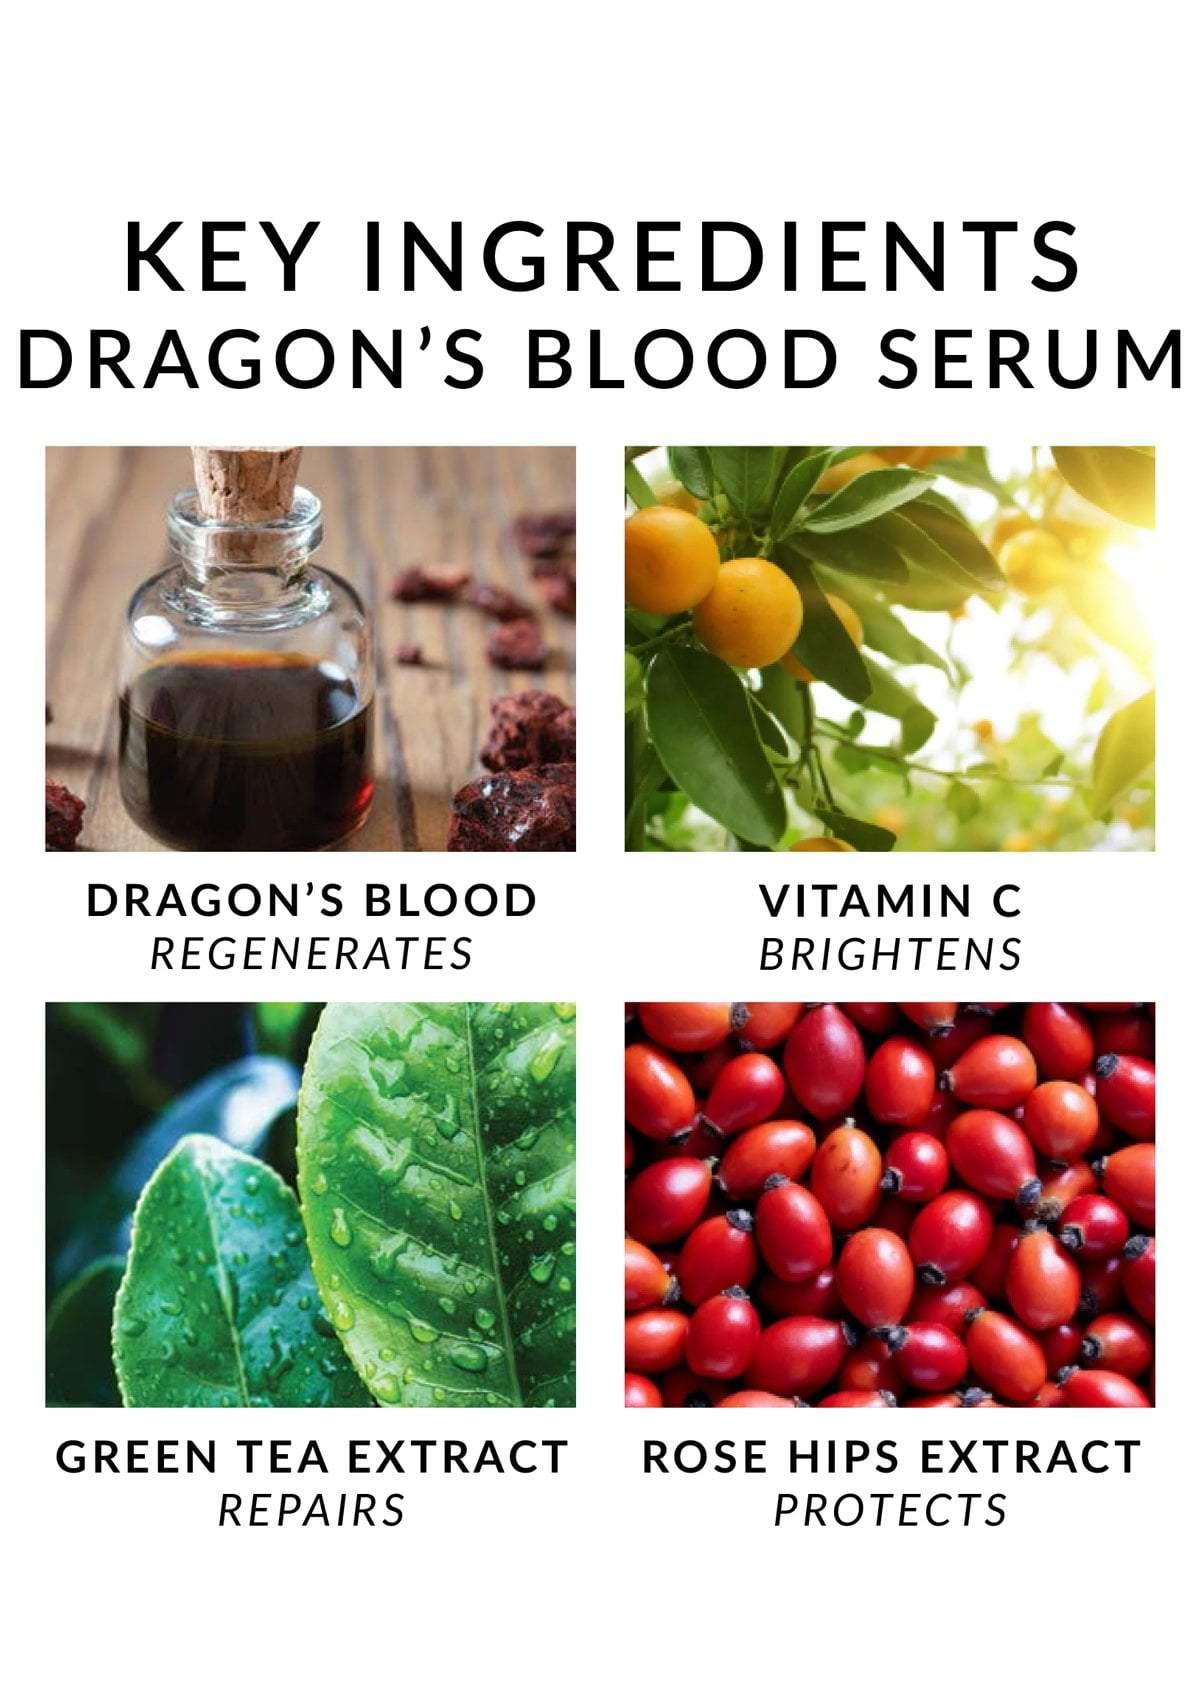 Dragons Blood oil - Hoodoo oil